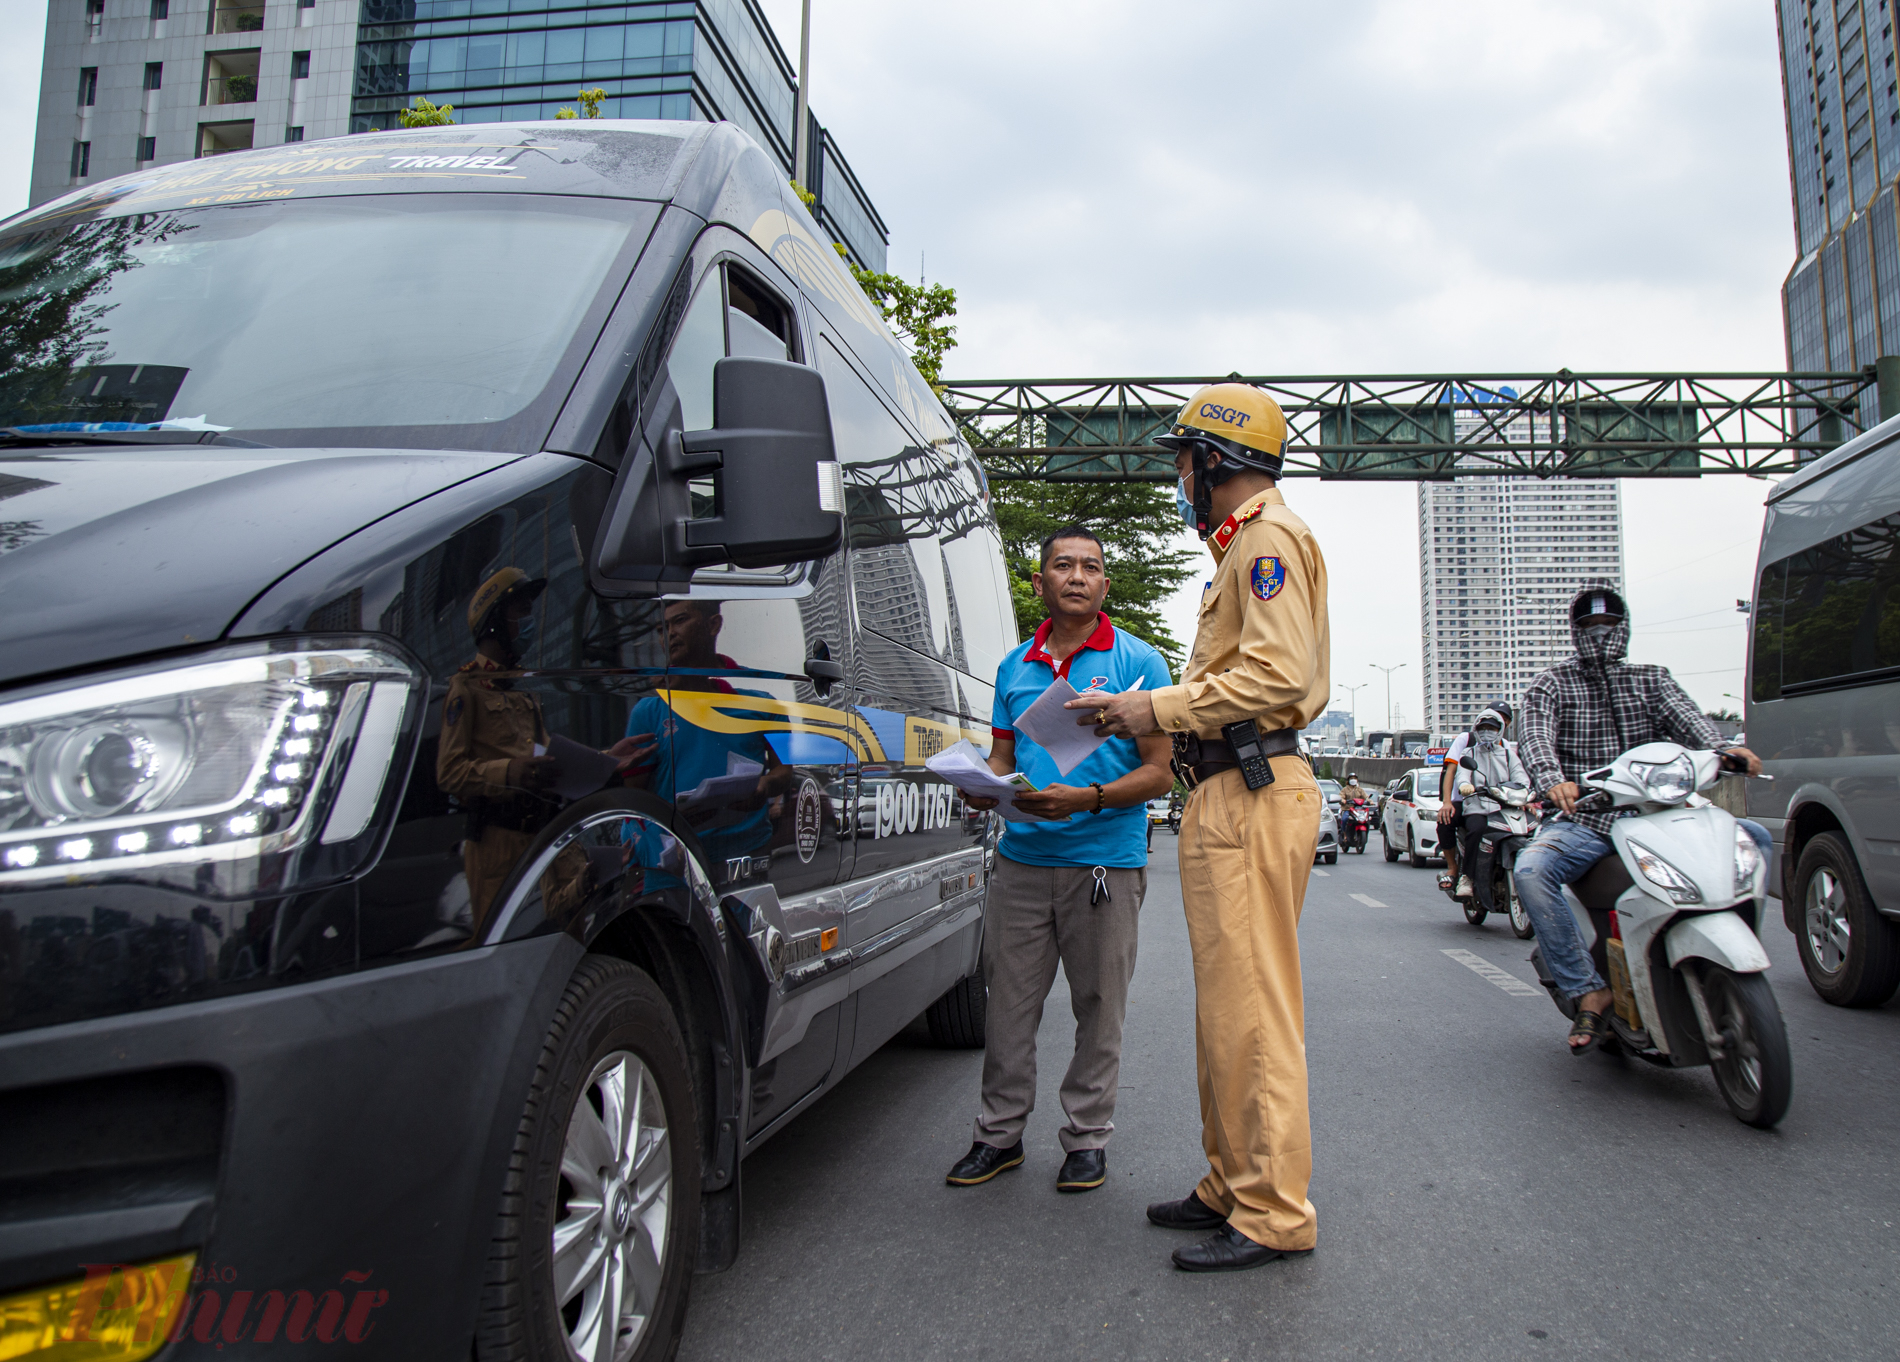 Để đảm bảo an toàn giao thông, giảm thiểu ùn tắc đội CSGT số 6 túc trực, phân luồng giao thông và xử phạt các xe bắt khách dọc đường, gây ùn tắc giao thông trên đường Phạm Hùng.